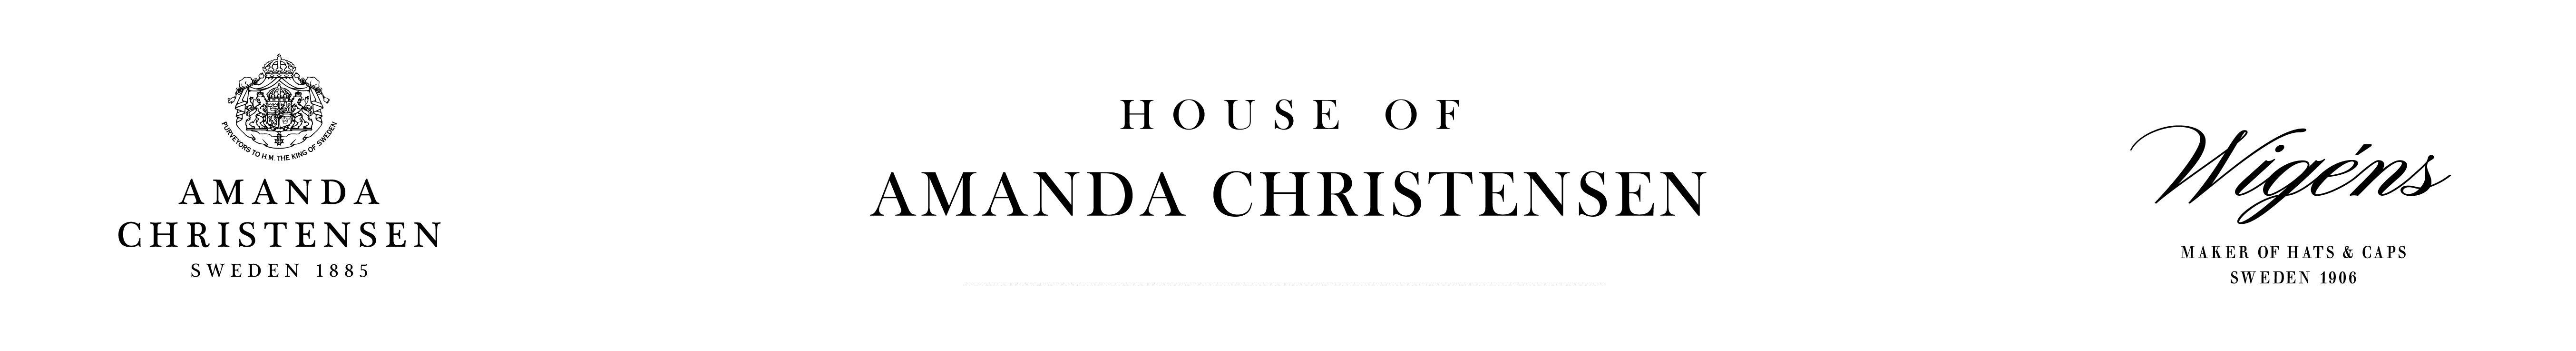 House of amanda christensen